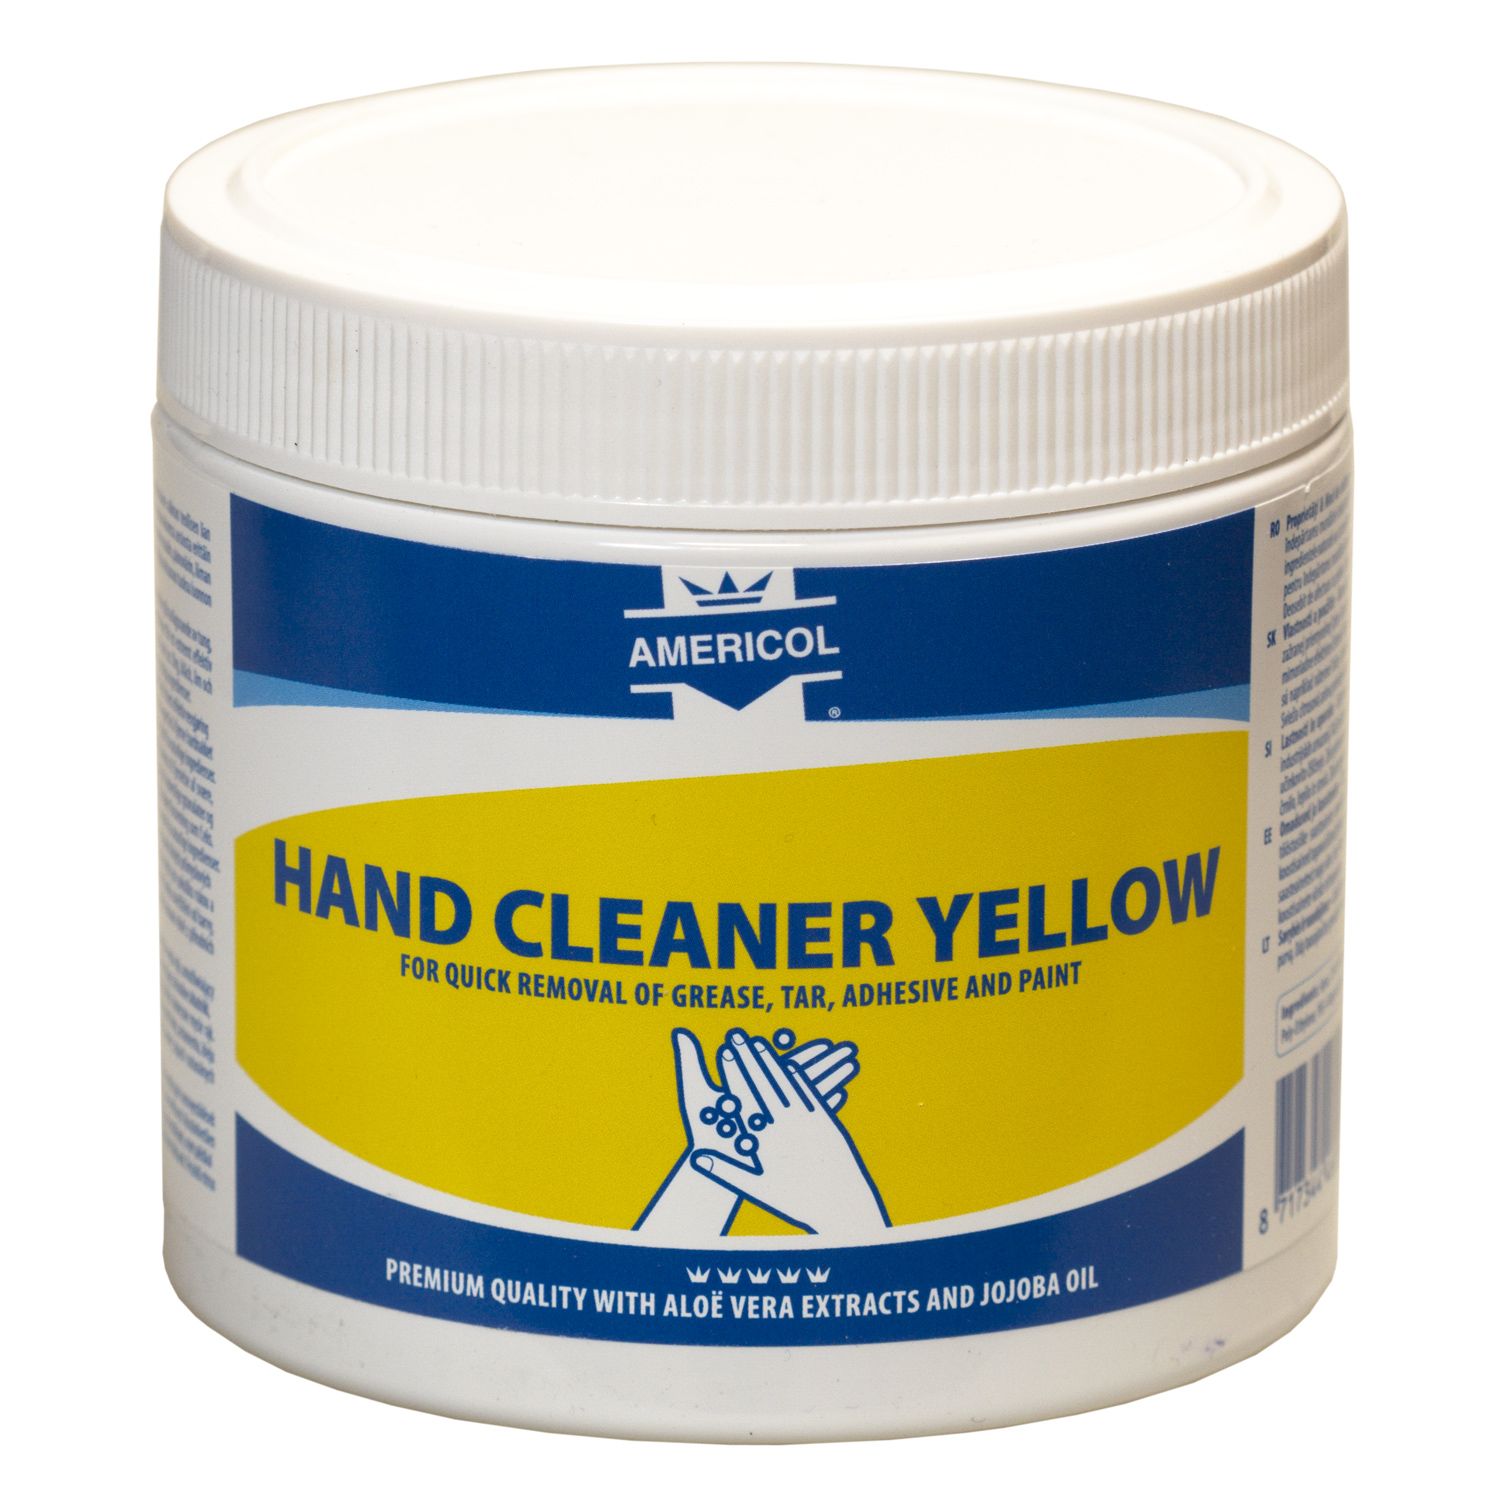 AMERICOL Hand Cleaner Yellow (600ml) pohotovostní balení